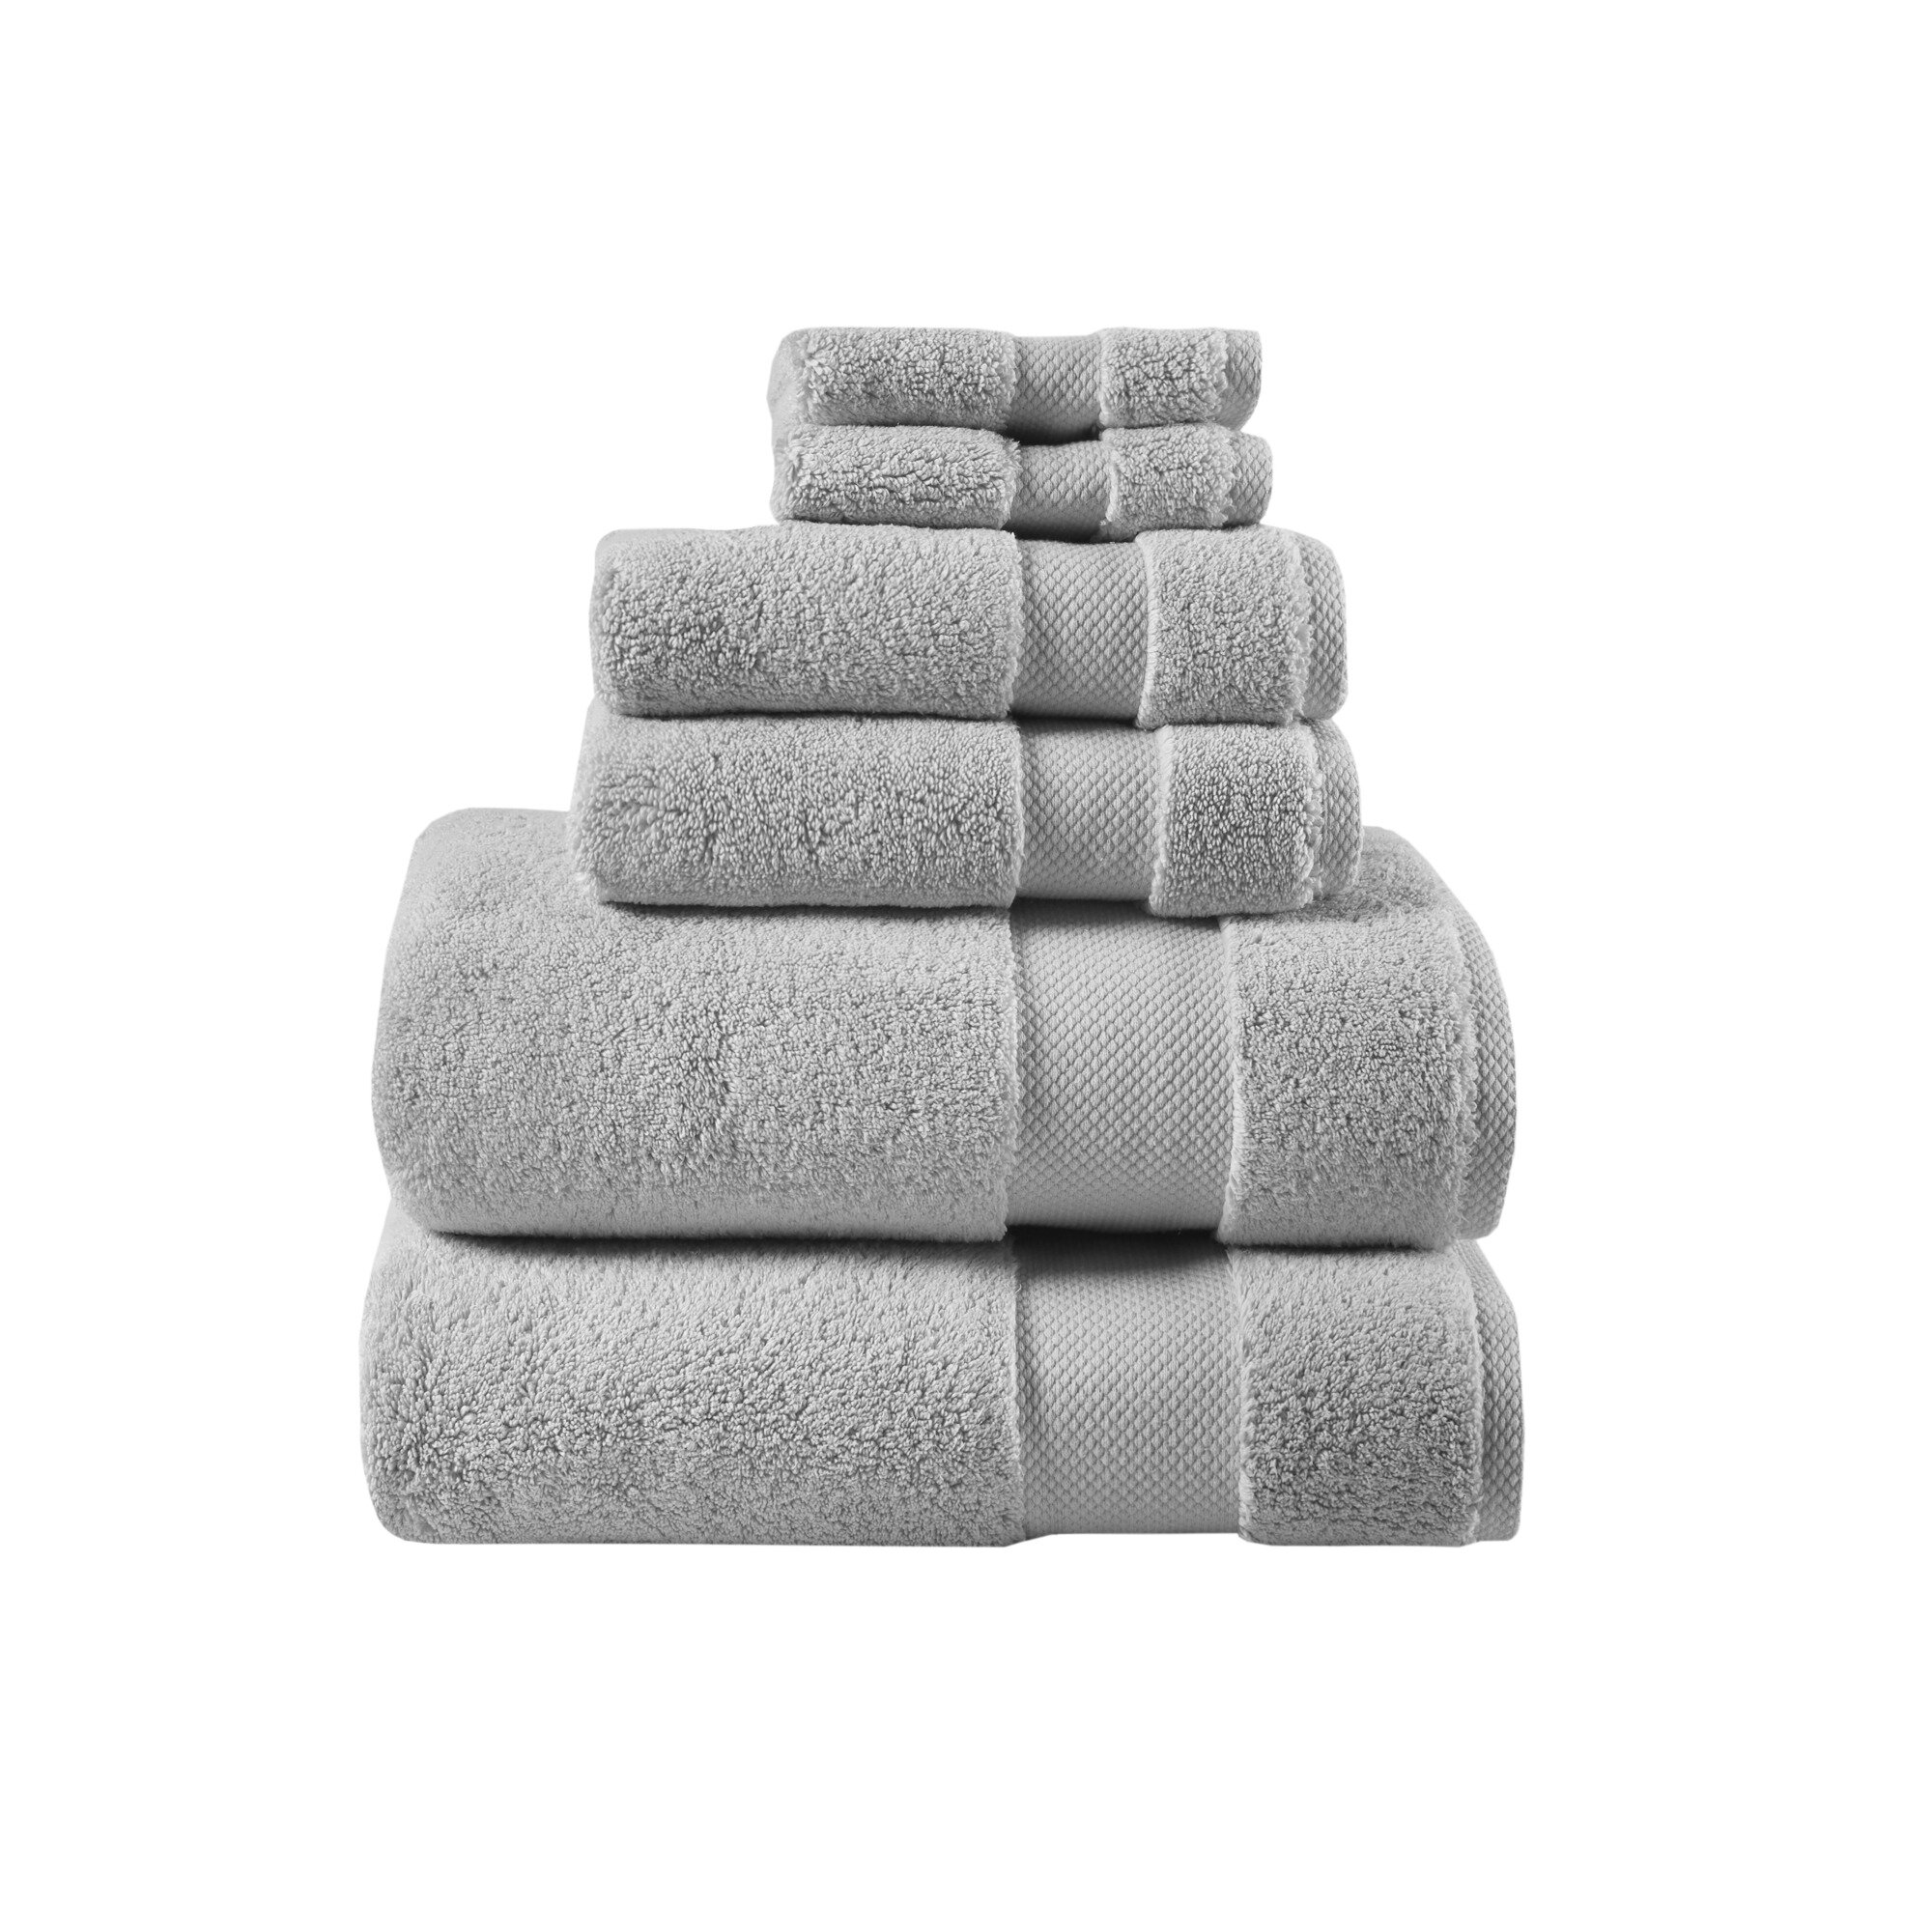 Madison Park Signature - 800GSM 100% Cotton 8 Piece Towel Set - White